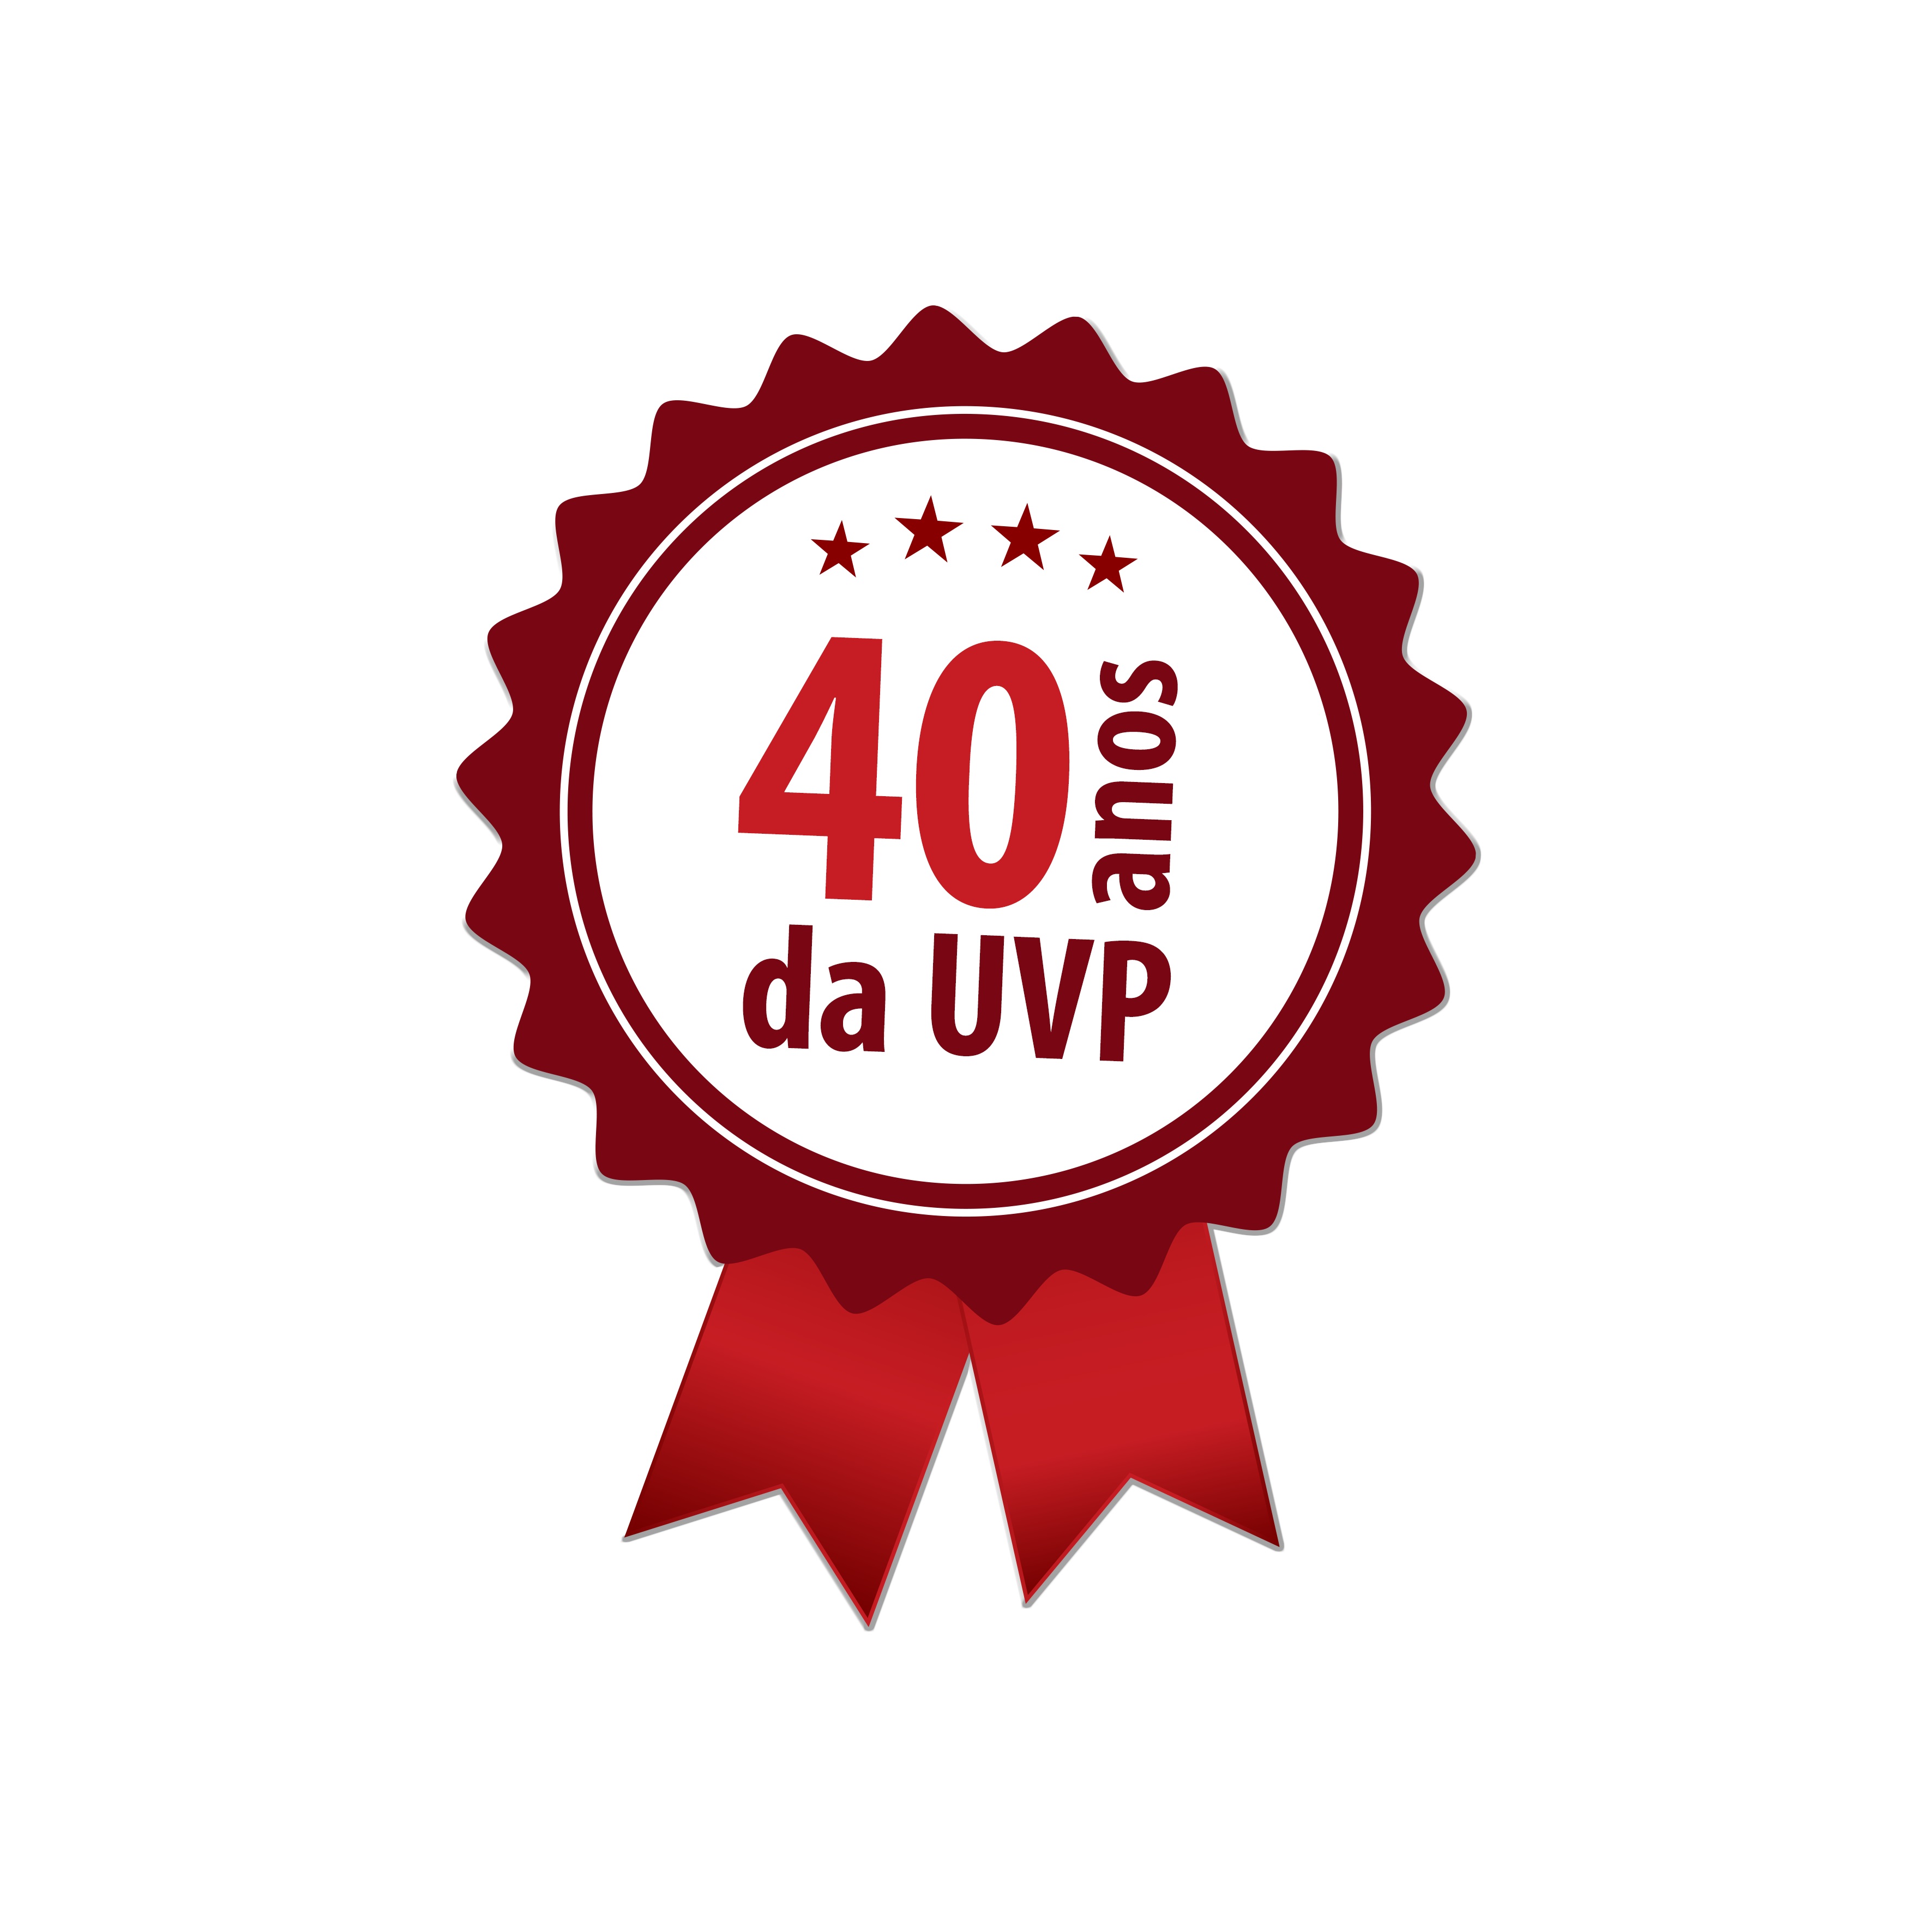 UVP agradece a todos que participaram do Congresso em Garanhuns